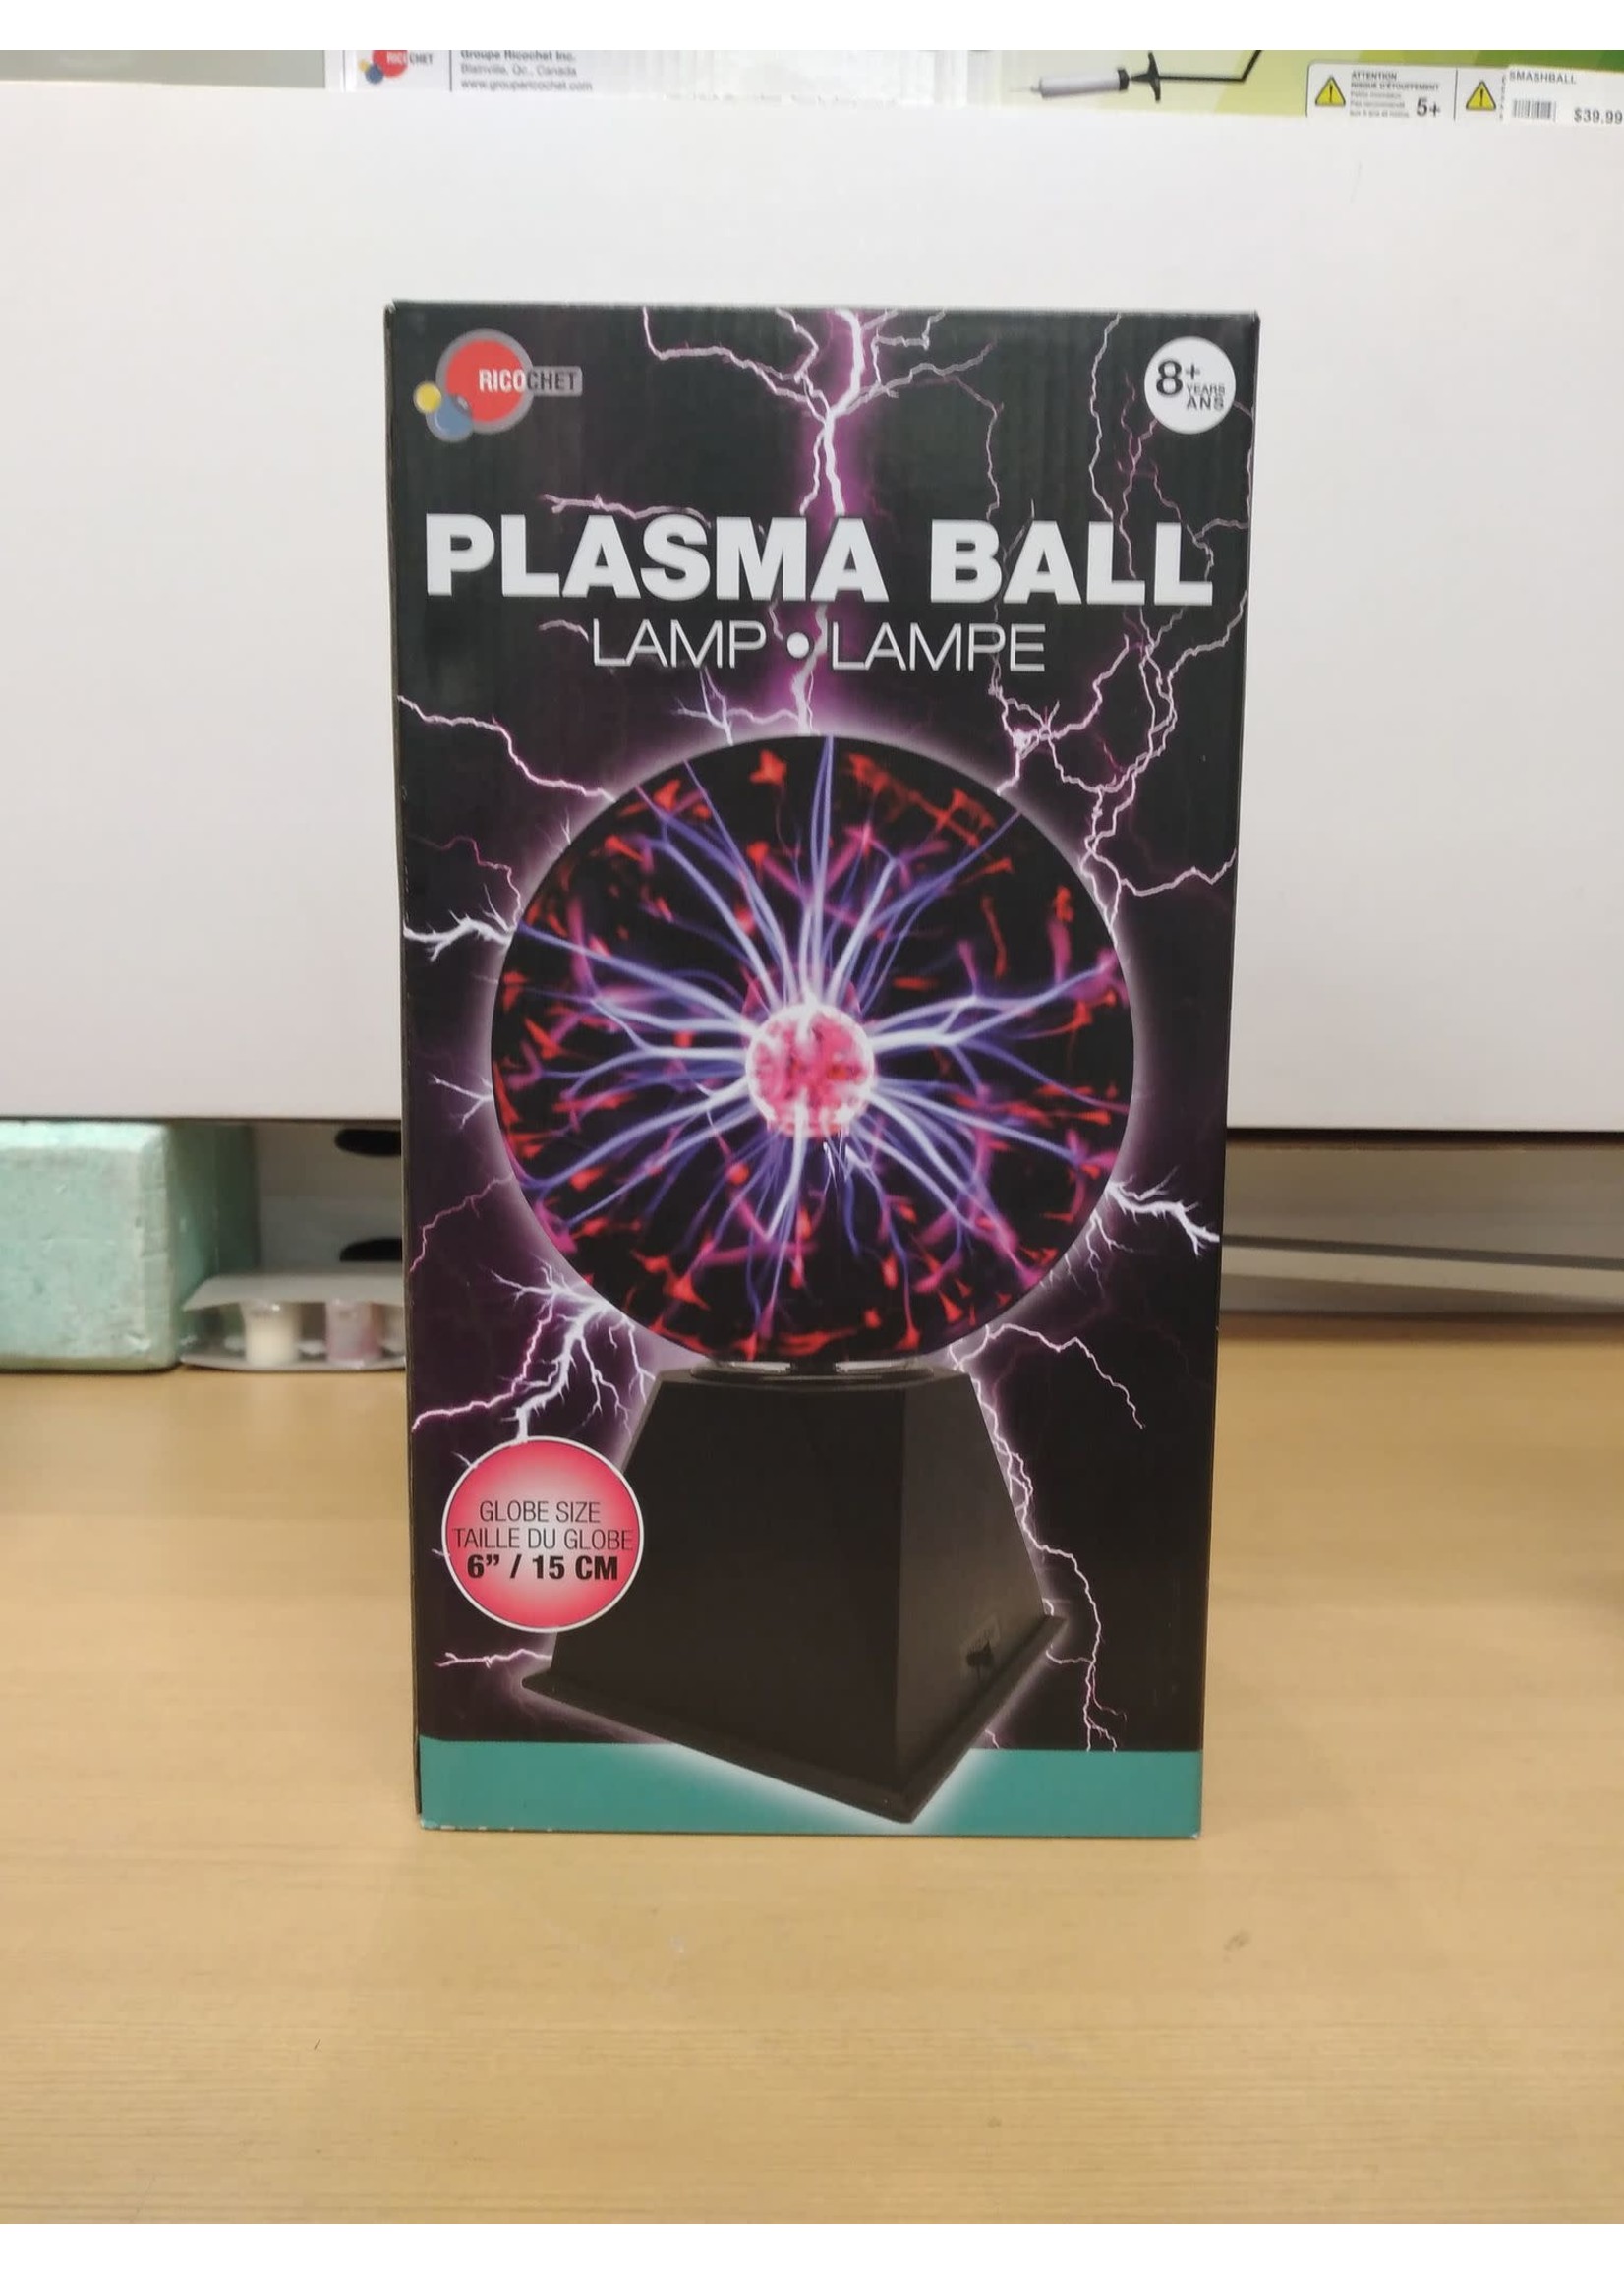 Ricochet Plasma ball - big